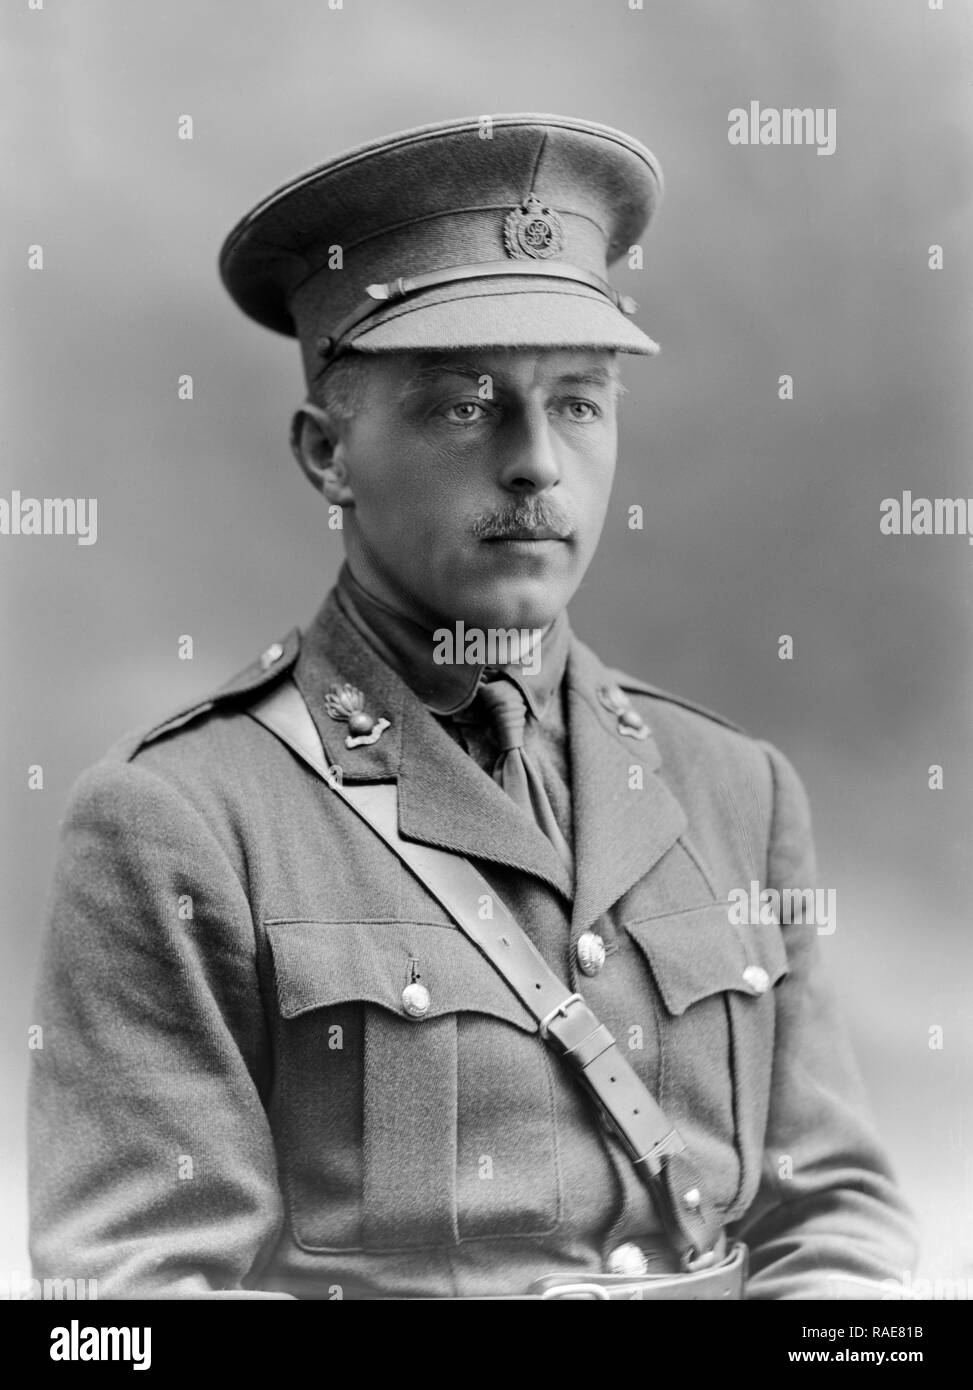 Photo prise le 1er avril 1915. Le Lieutenant R. N. Aylward, des Royal Engineers de l'armée britannique. Prises dans le célèbre studio de photographie de Bassano à Londres. Soldat de la Première Guerre mondiale. Banque D'Images